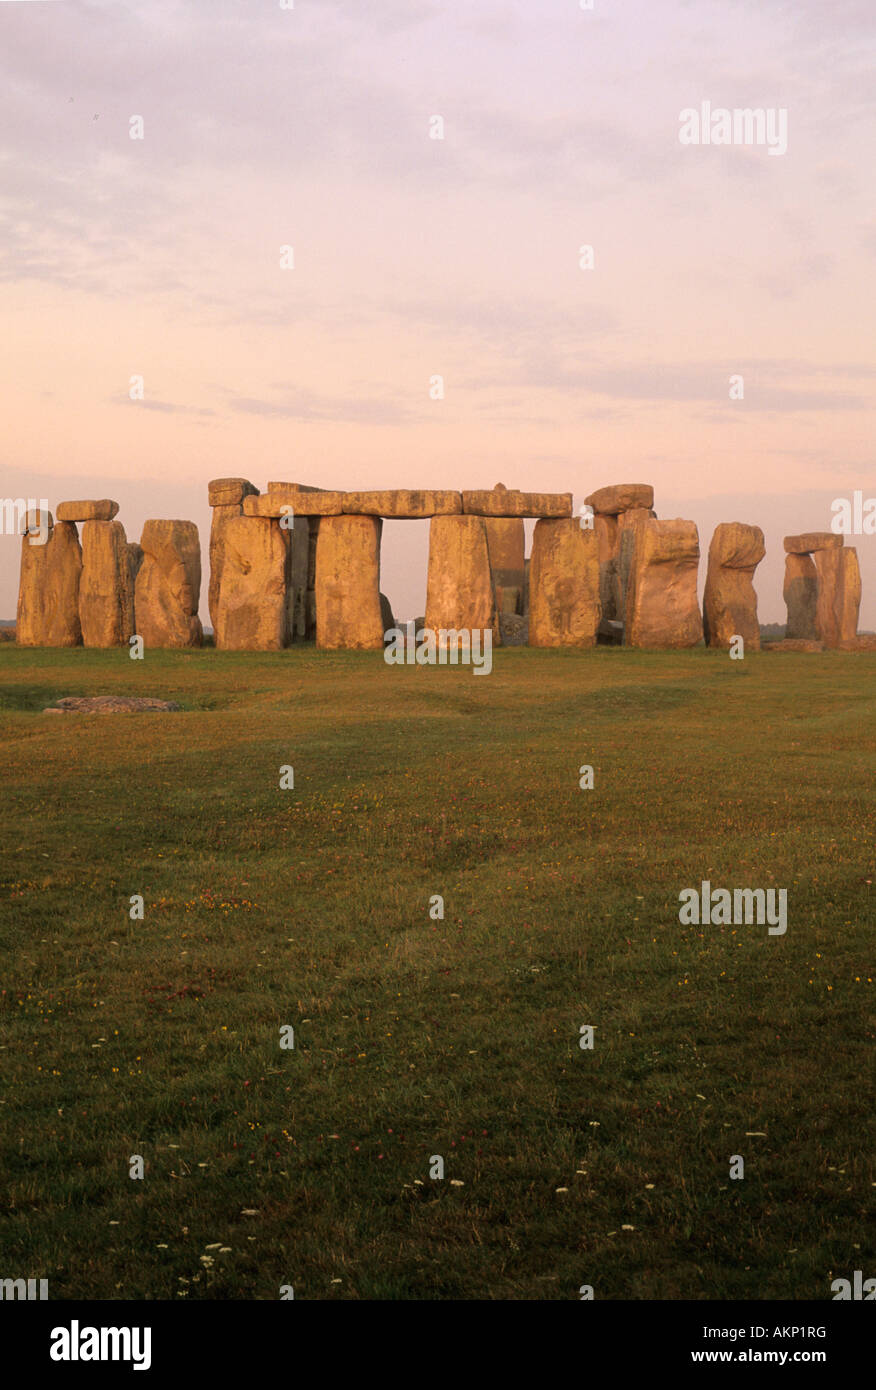 Le cercle de pierres de Stonehenge, néolithique, la plaine de Salisbury, Wiltshire, Angleterre Banque D'Images